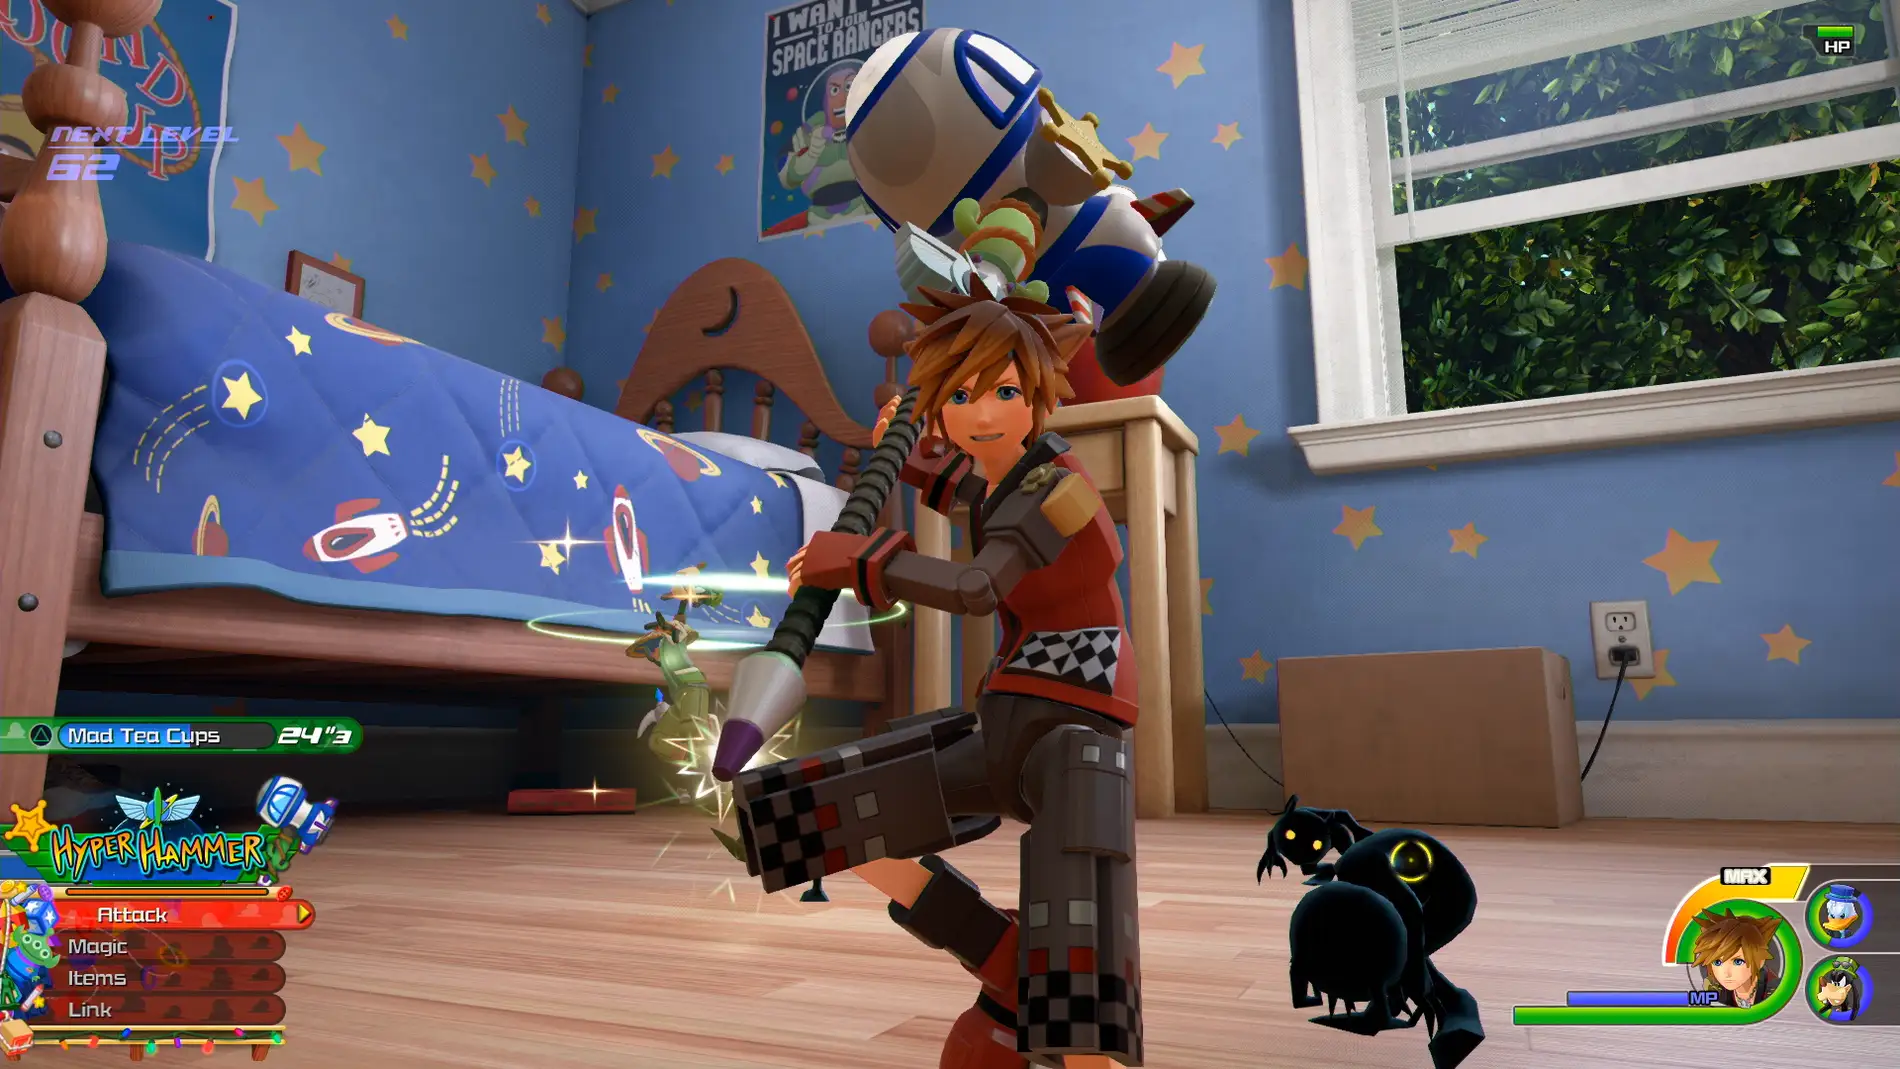 Guinness Específicamente Escultor Reveladas nuevas imágenes, gameplay y más detalles de Kingdom Hearts 3